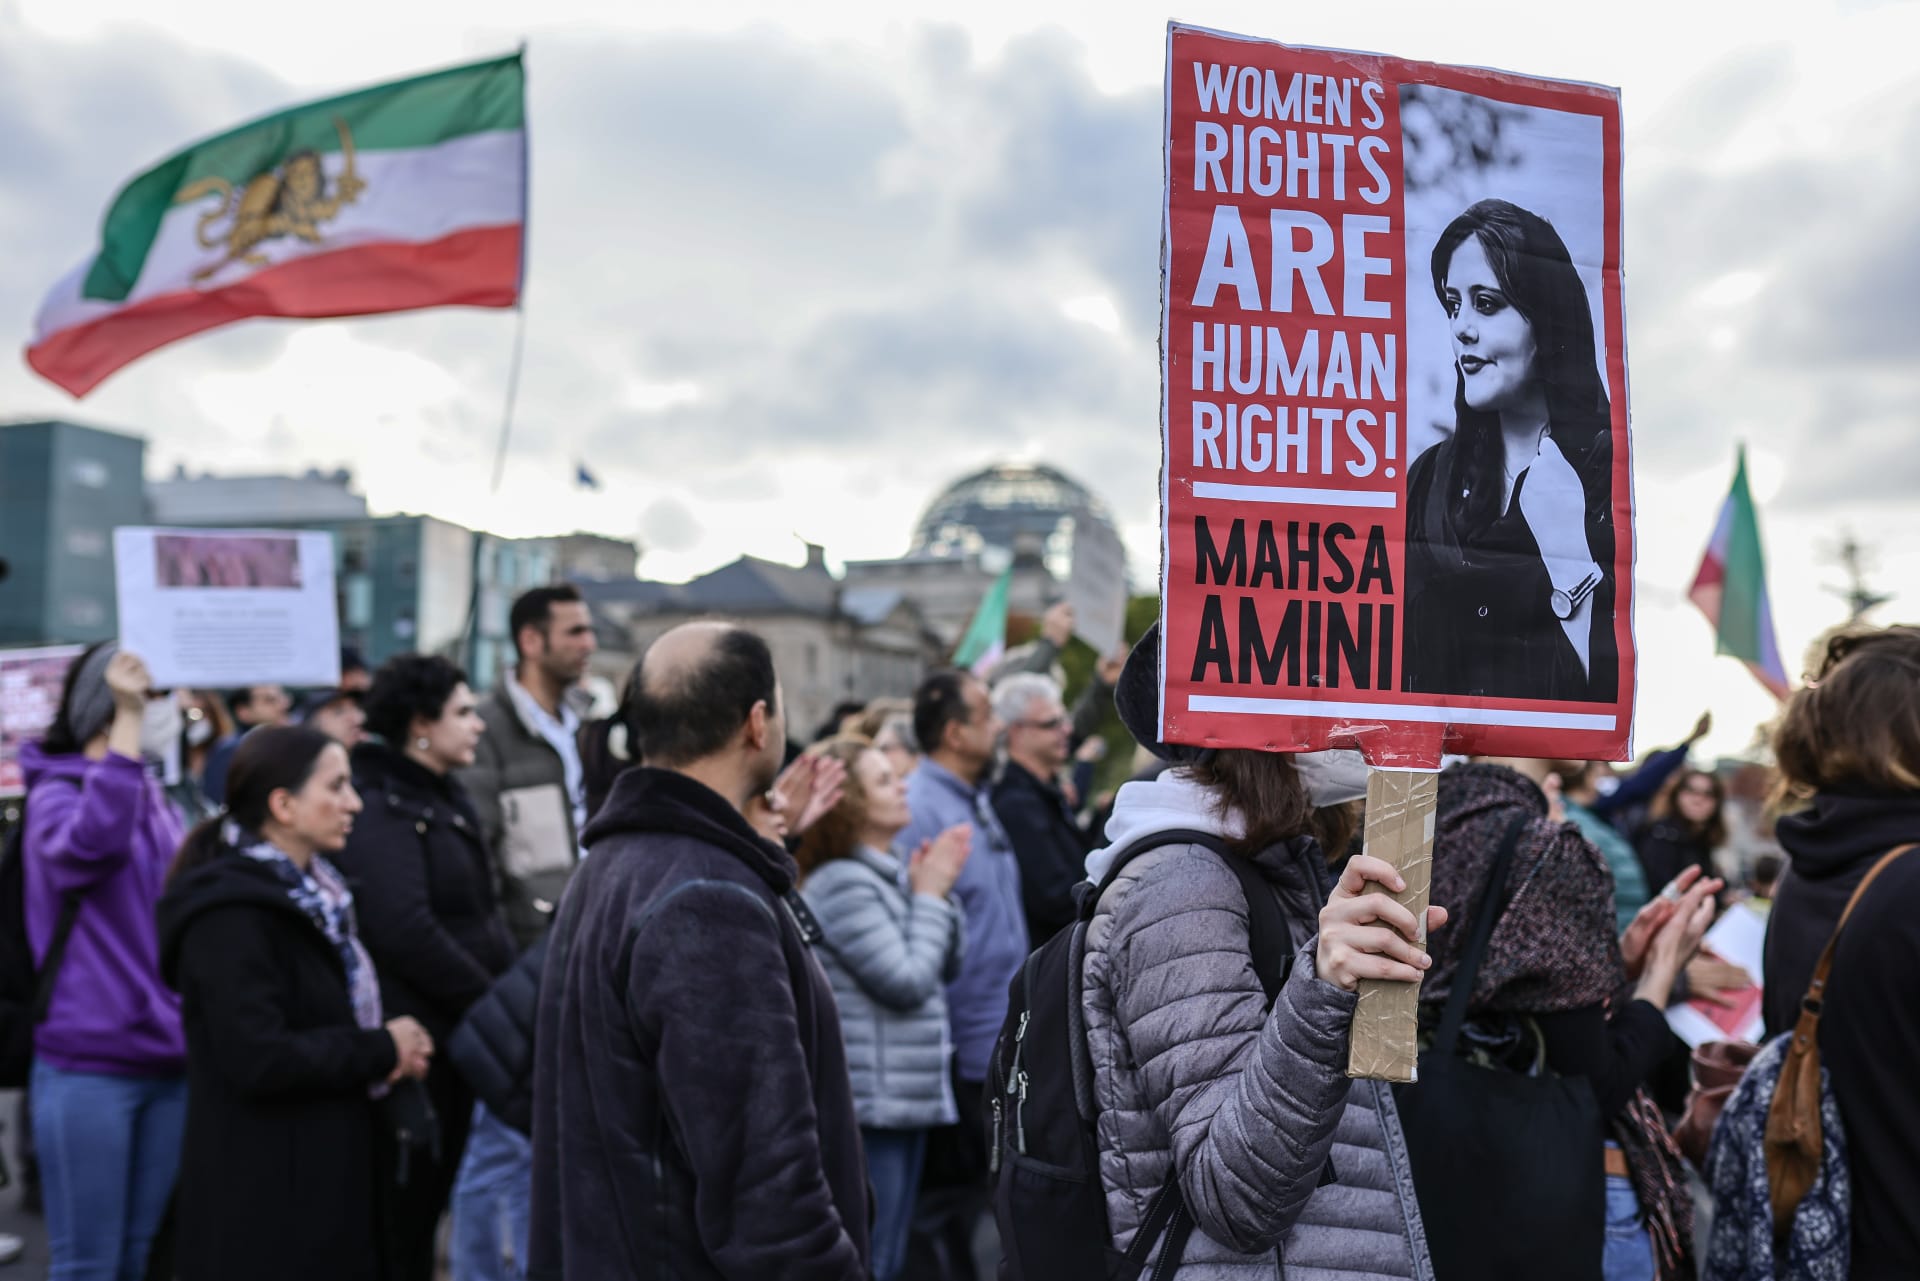 الكونغرس يقر مشروع قانون "مهسا أميني" لمحاسبة المسؤولين الإيرانيين على انتهاك حقوق الإنسان